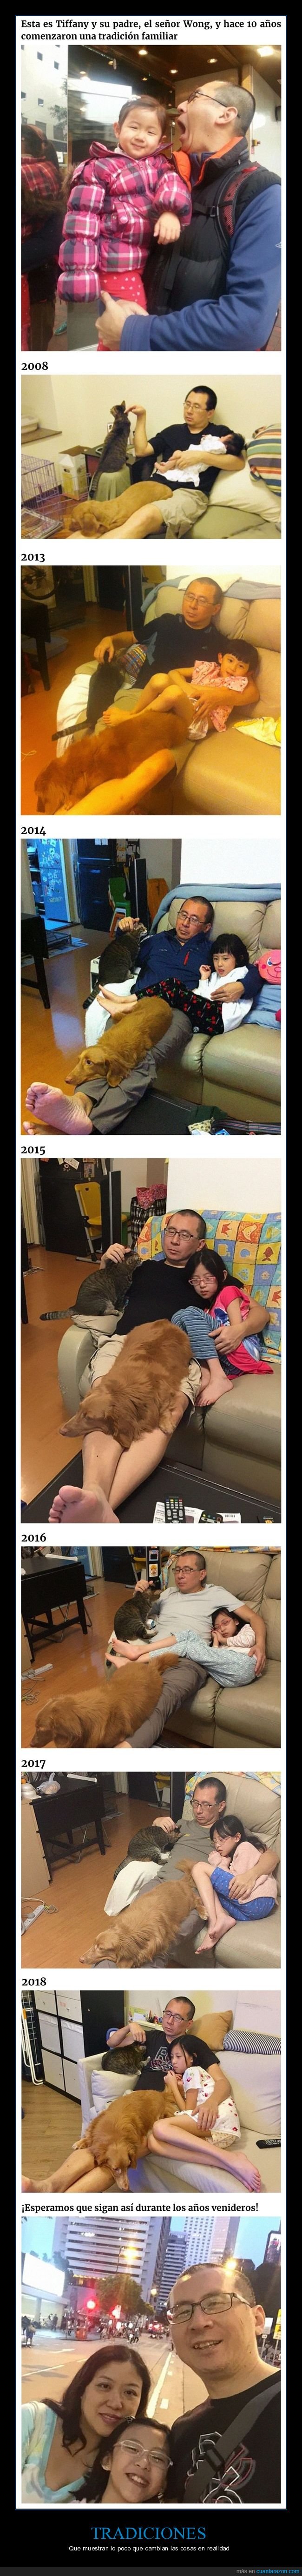 tradición,padre,hija,mascotas,10 años